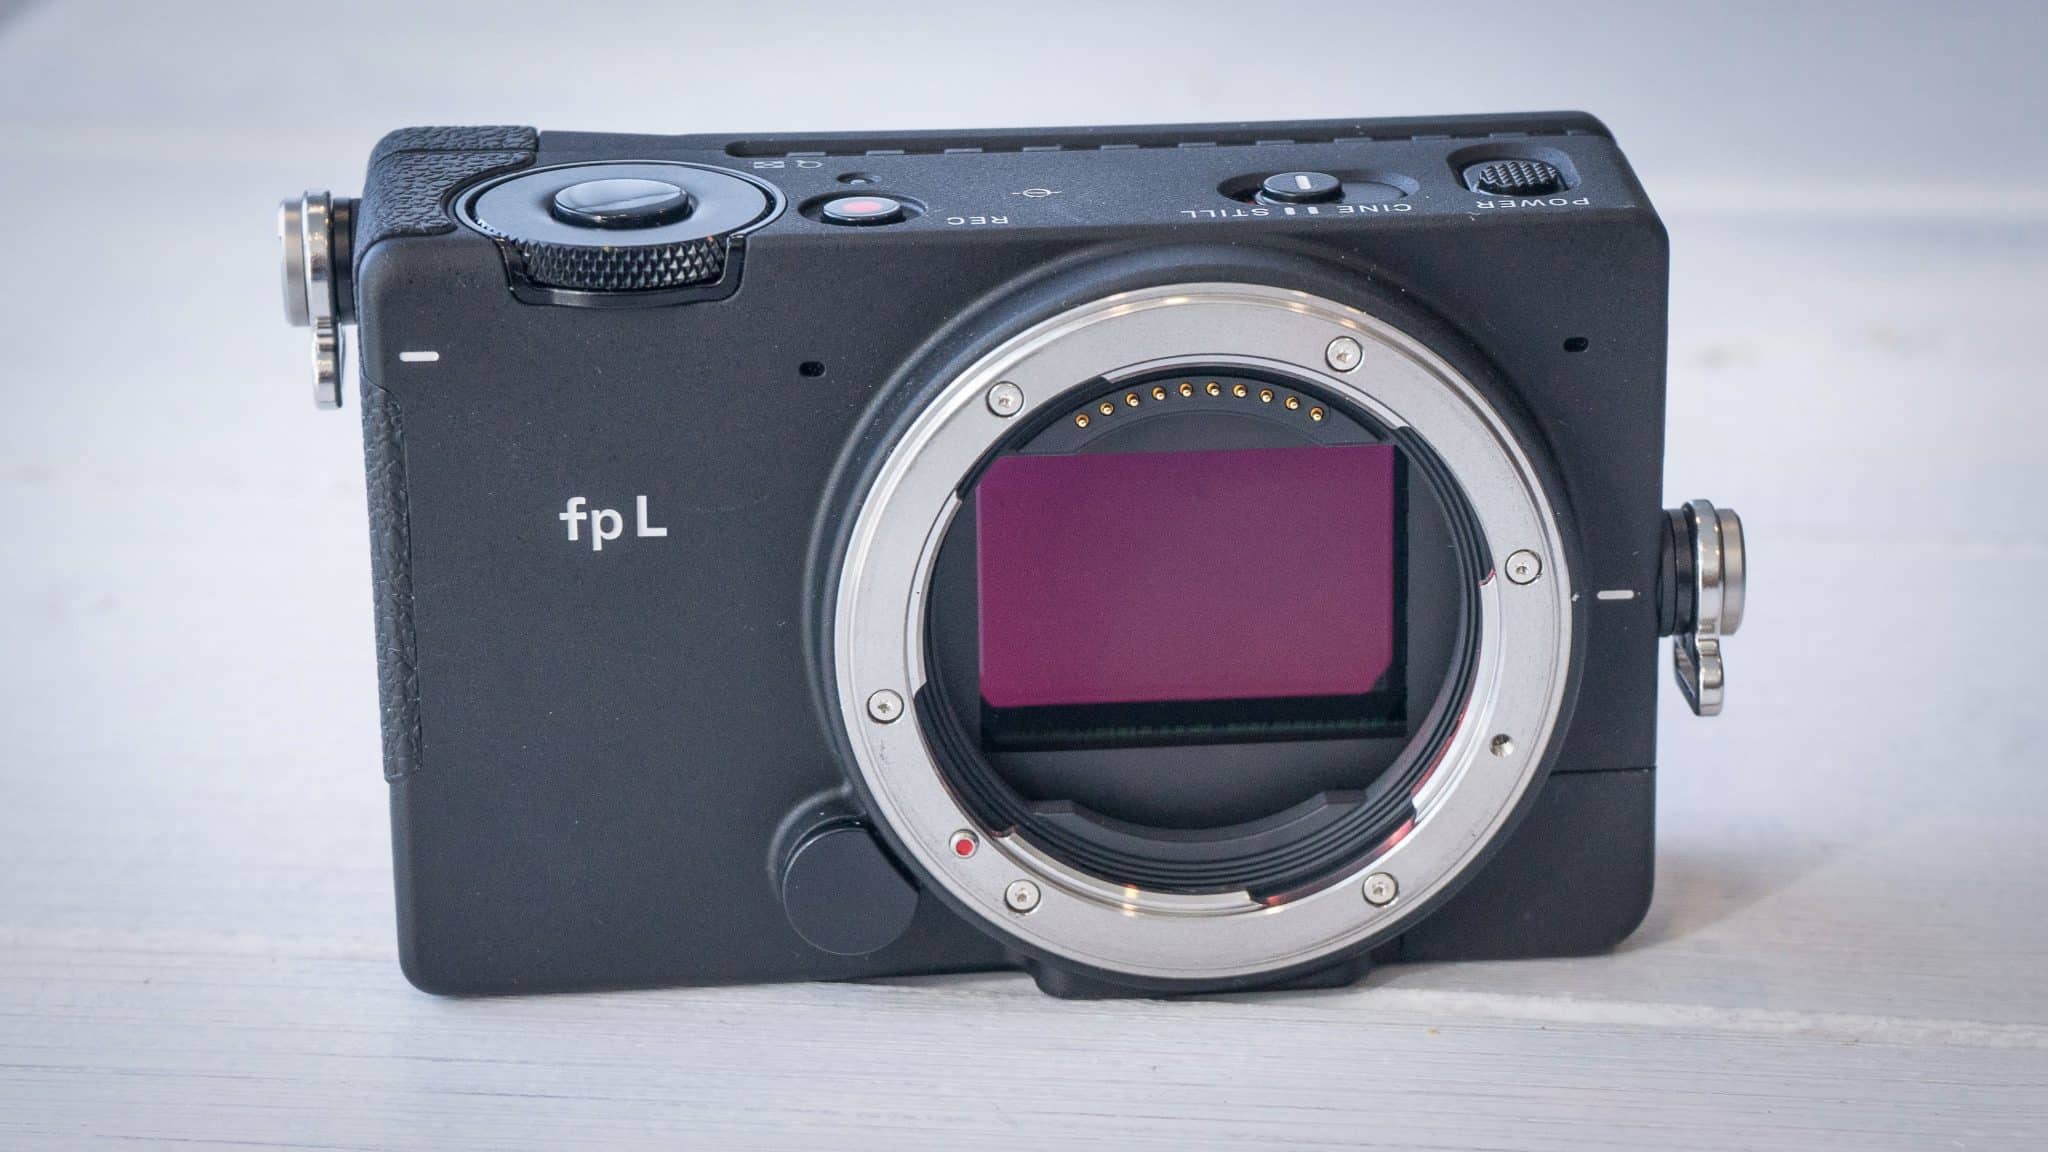 Sigma FP-L sắp ra mắt sẽ trang bị cảm biến full frame 60MP